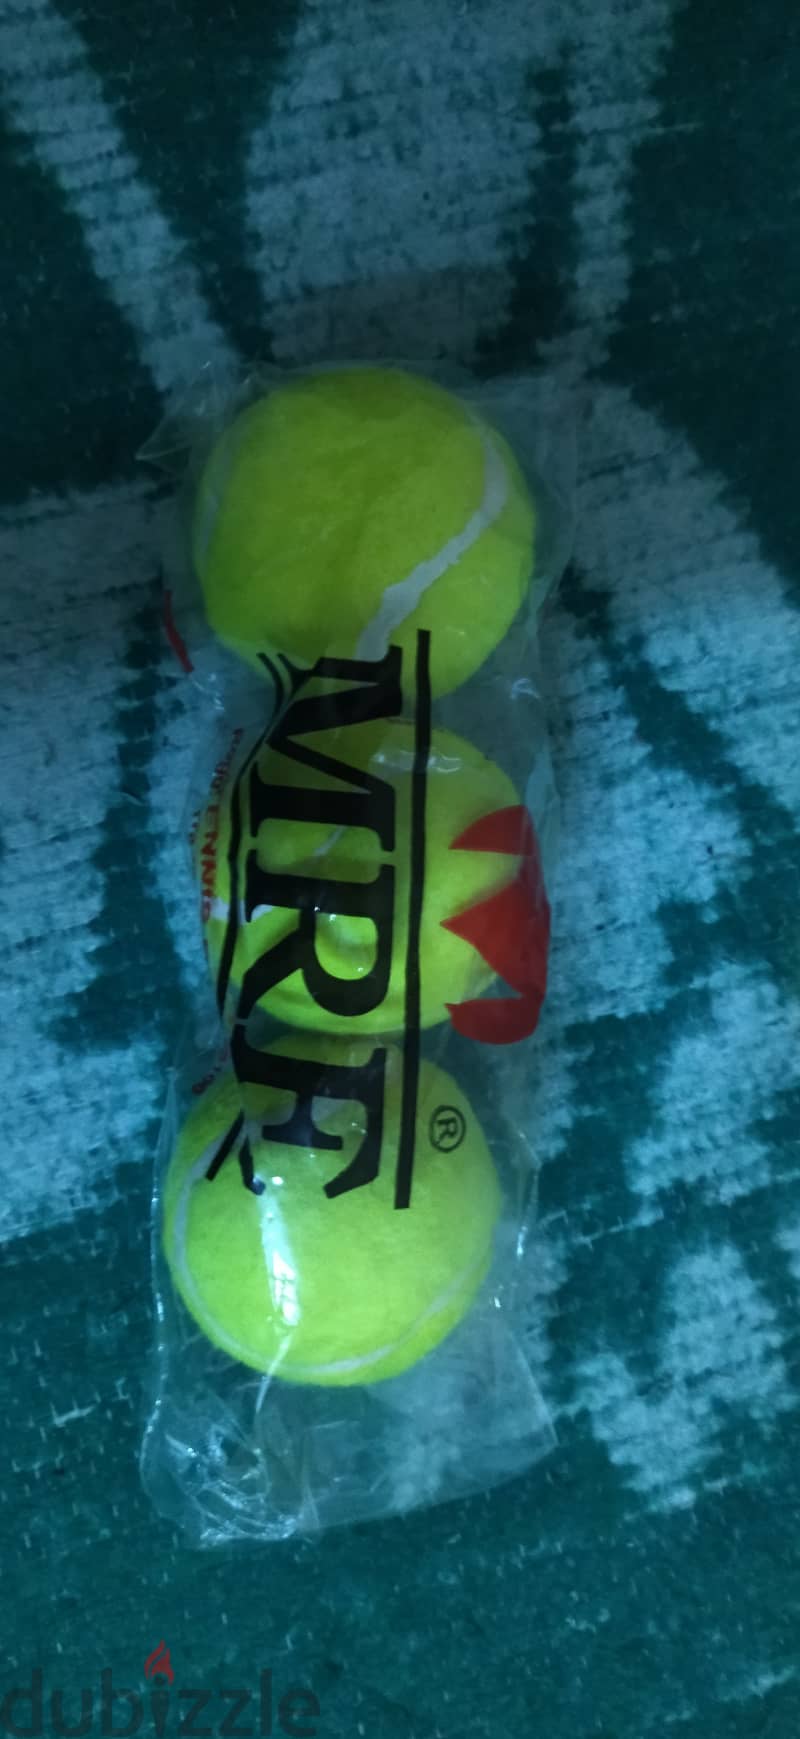 Tennis ball (3 piece ) 9